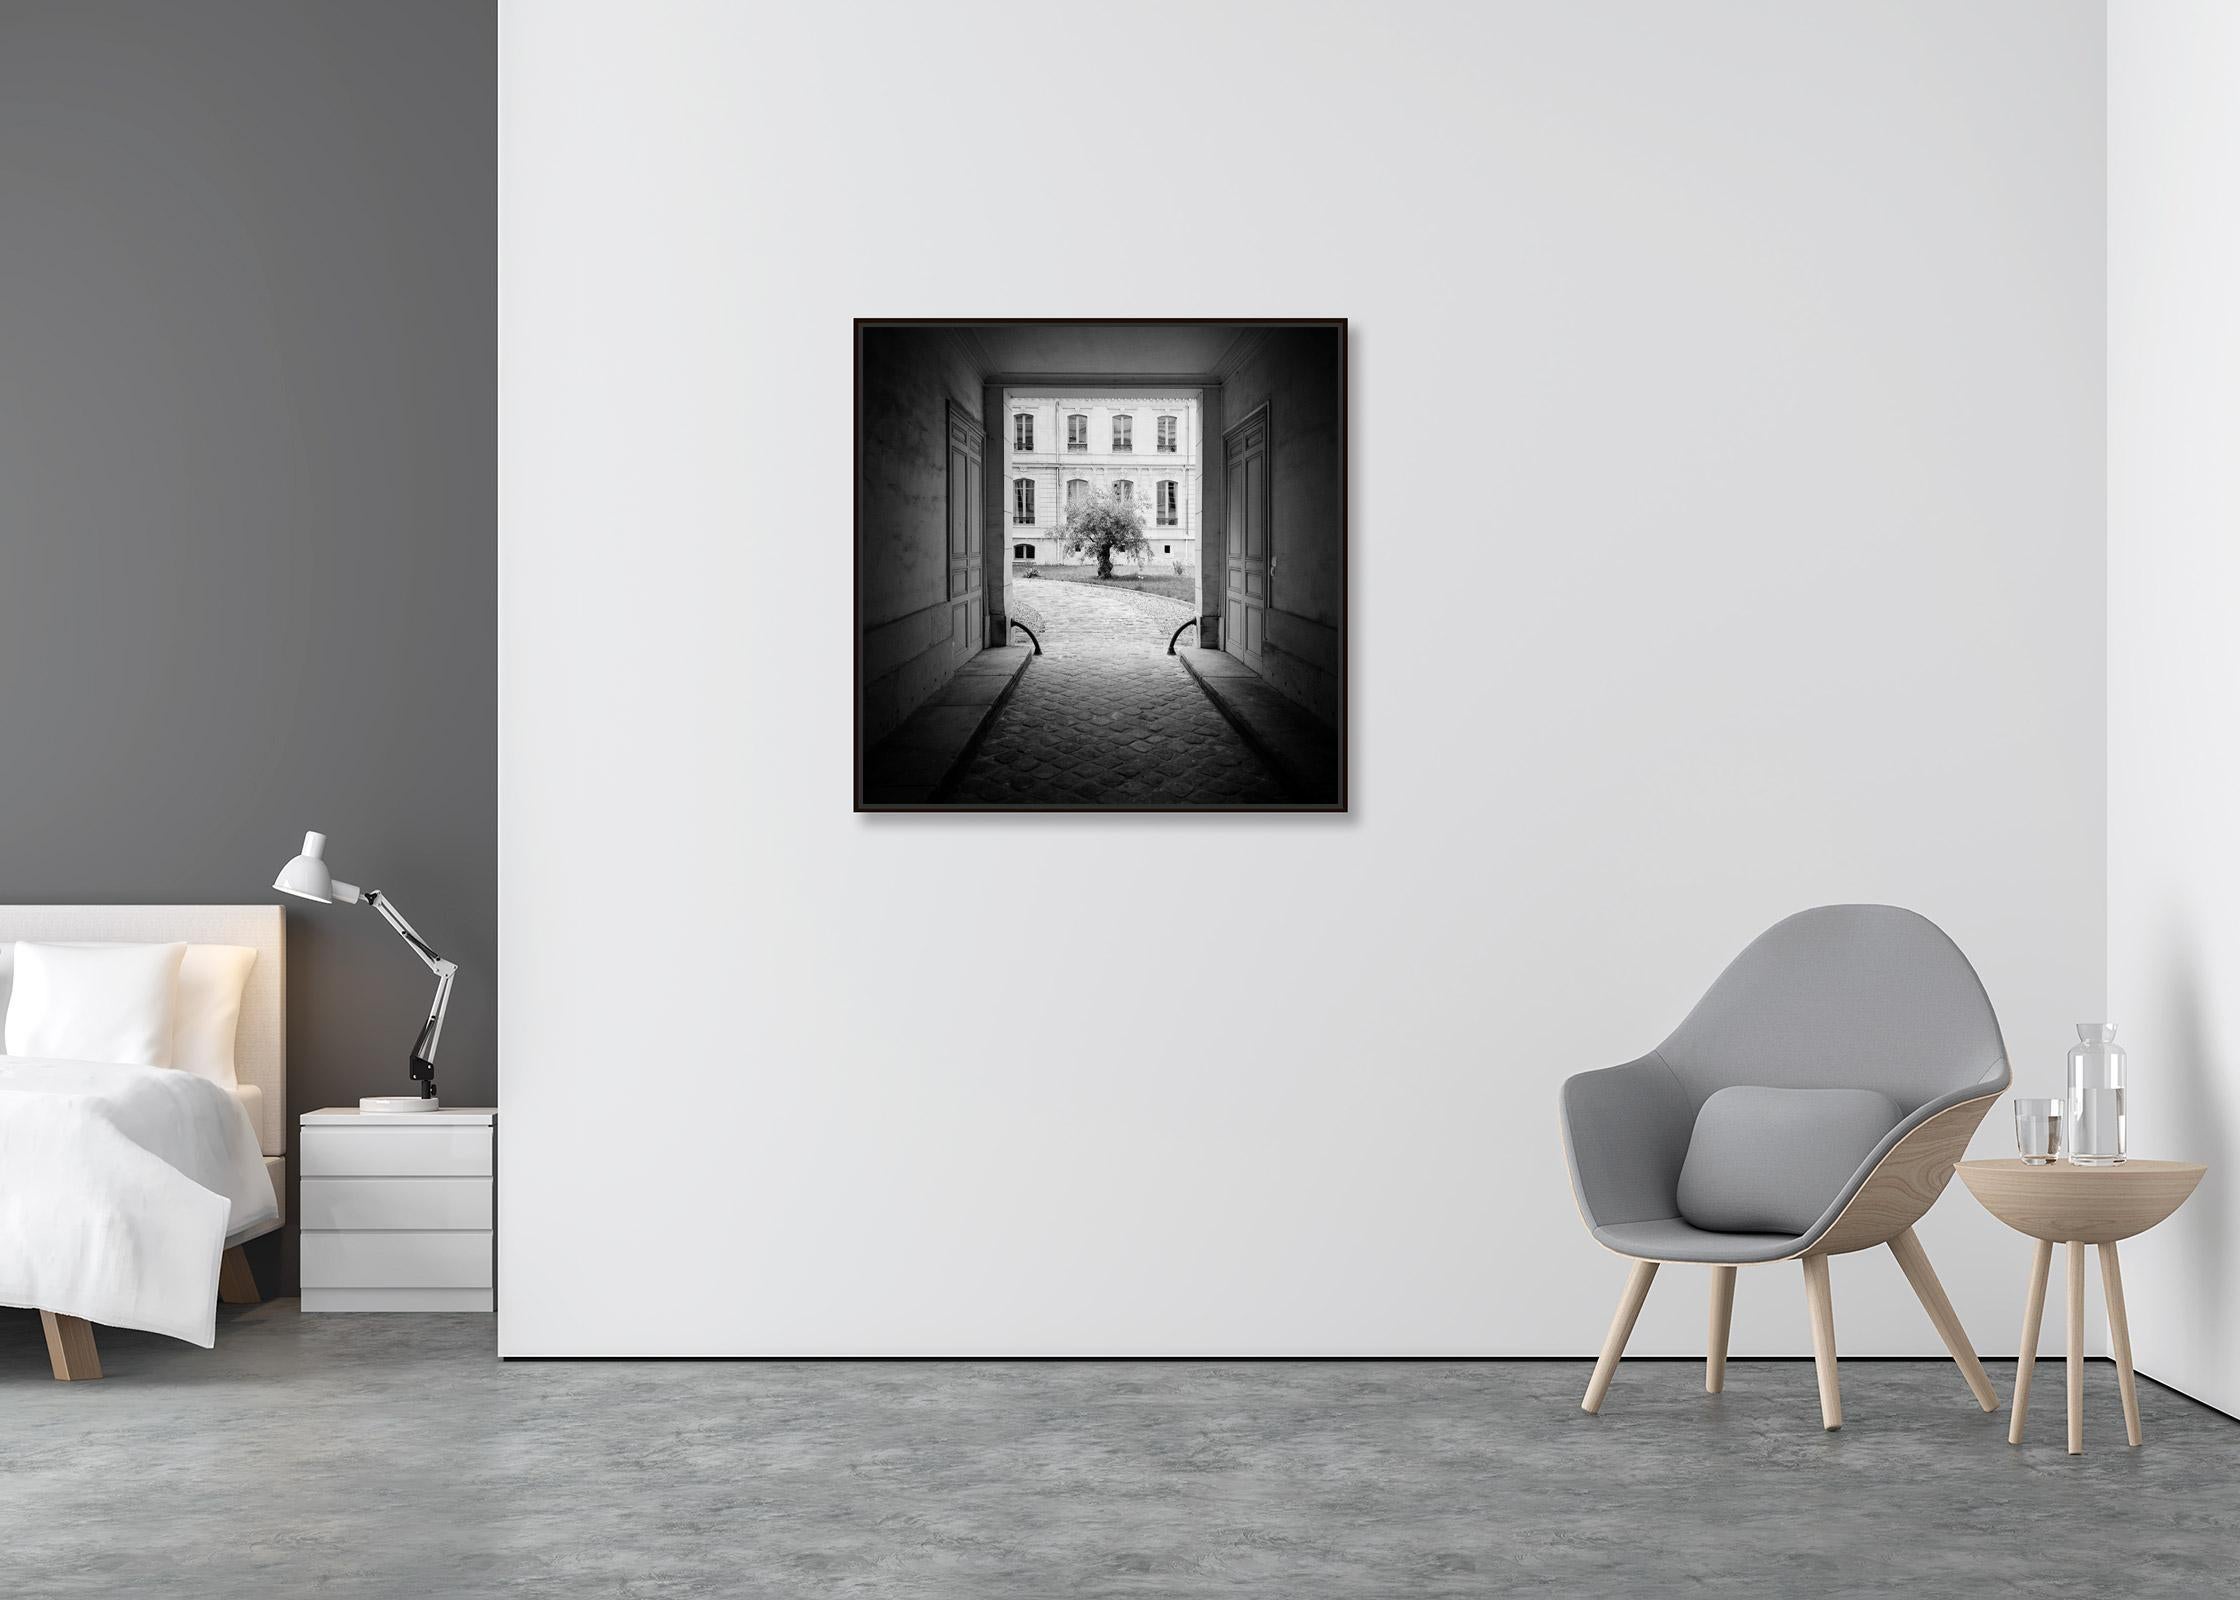 Baum im Garten, Paris, Frankreich, Schwarz-Weiß-Fotografie der bildenden Kunst (Zeitgenössisch), Photograph, von Gerald Berghammer